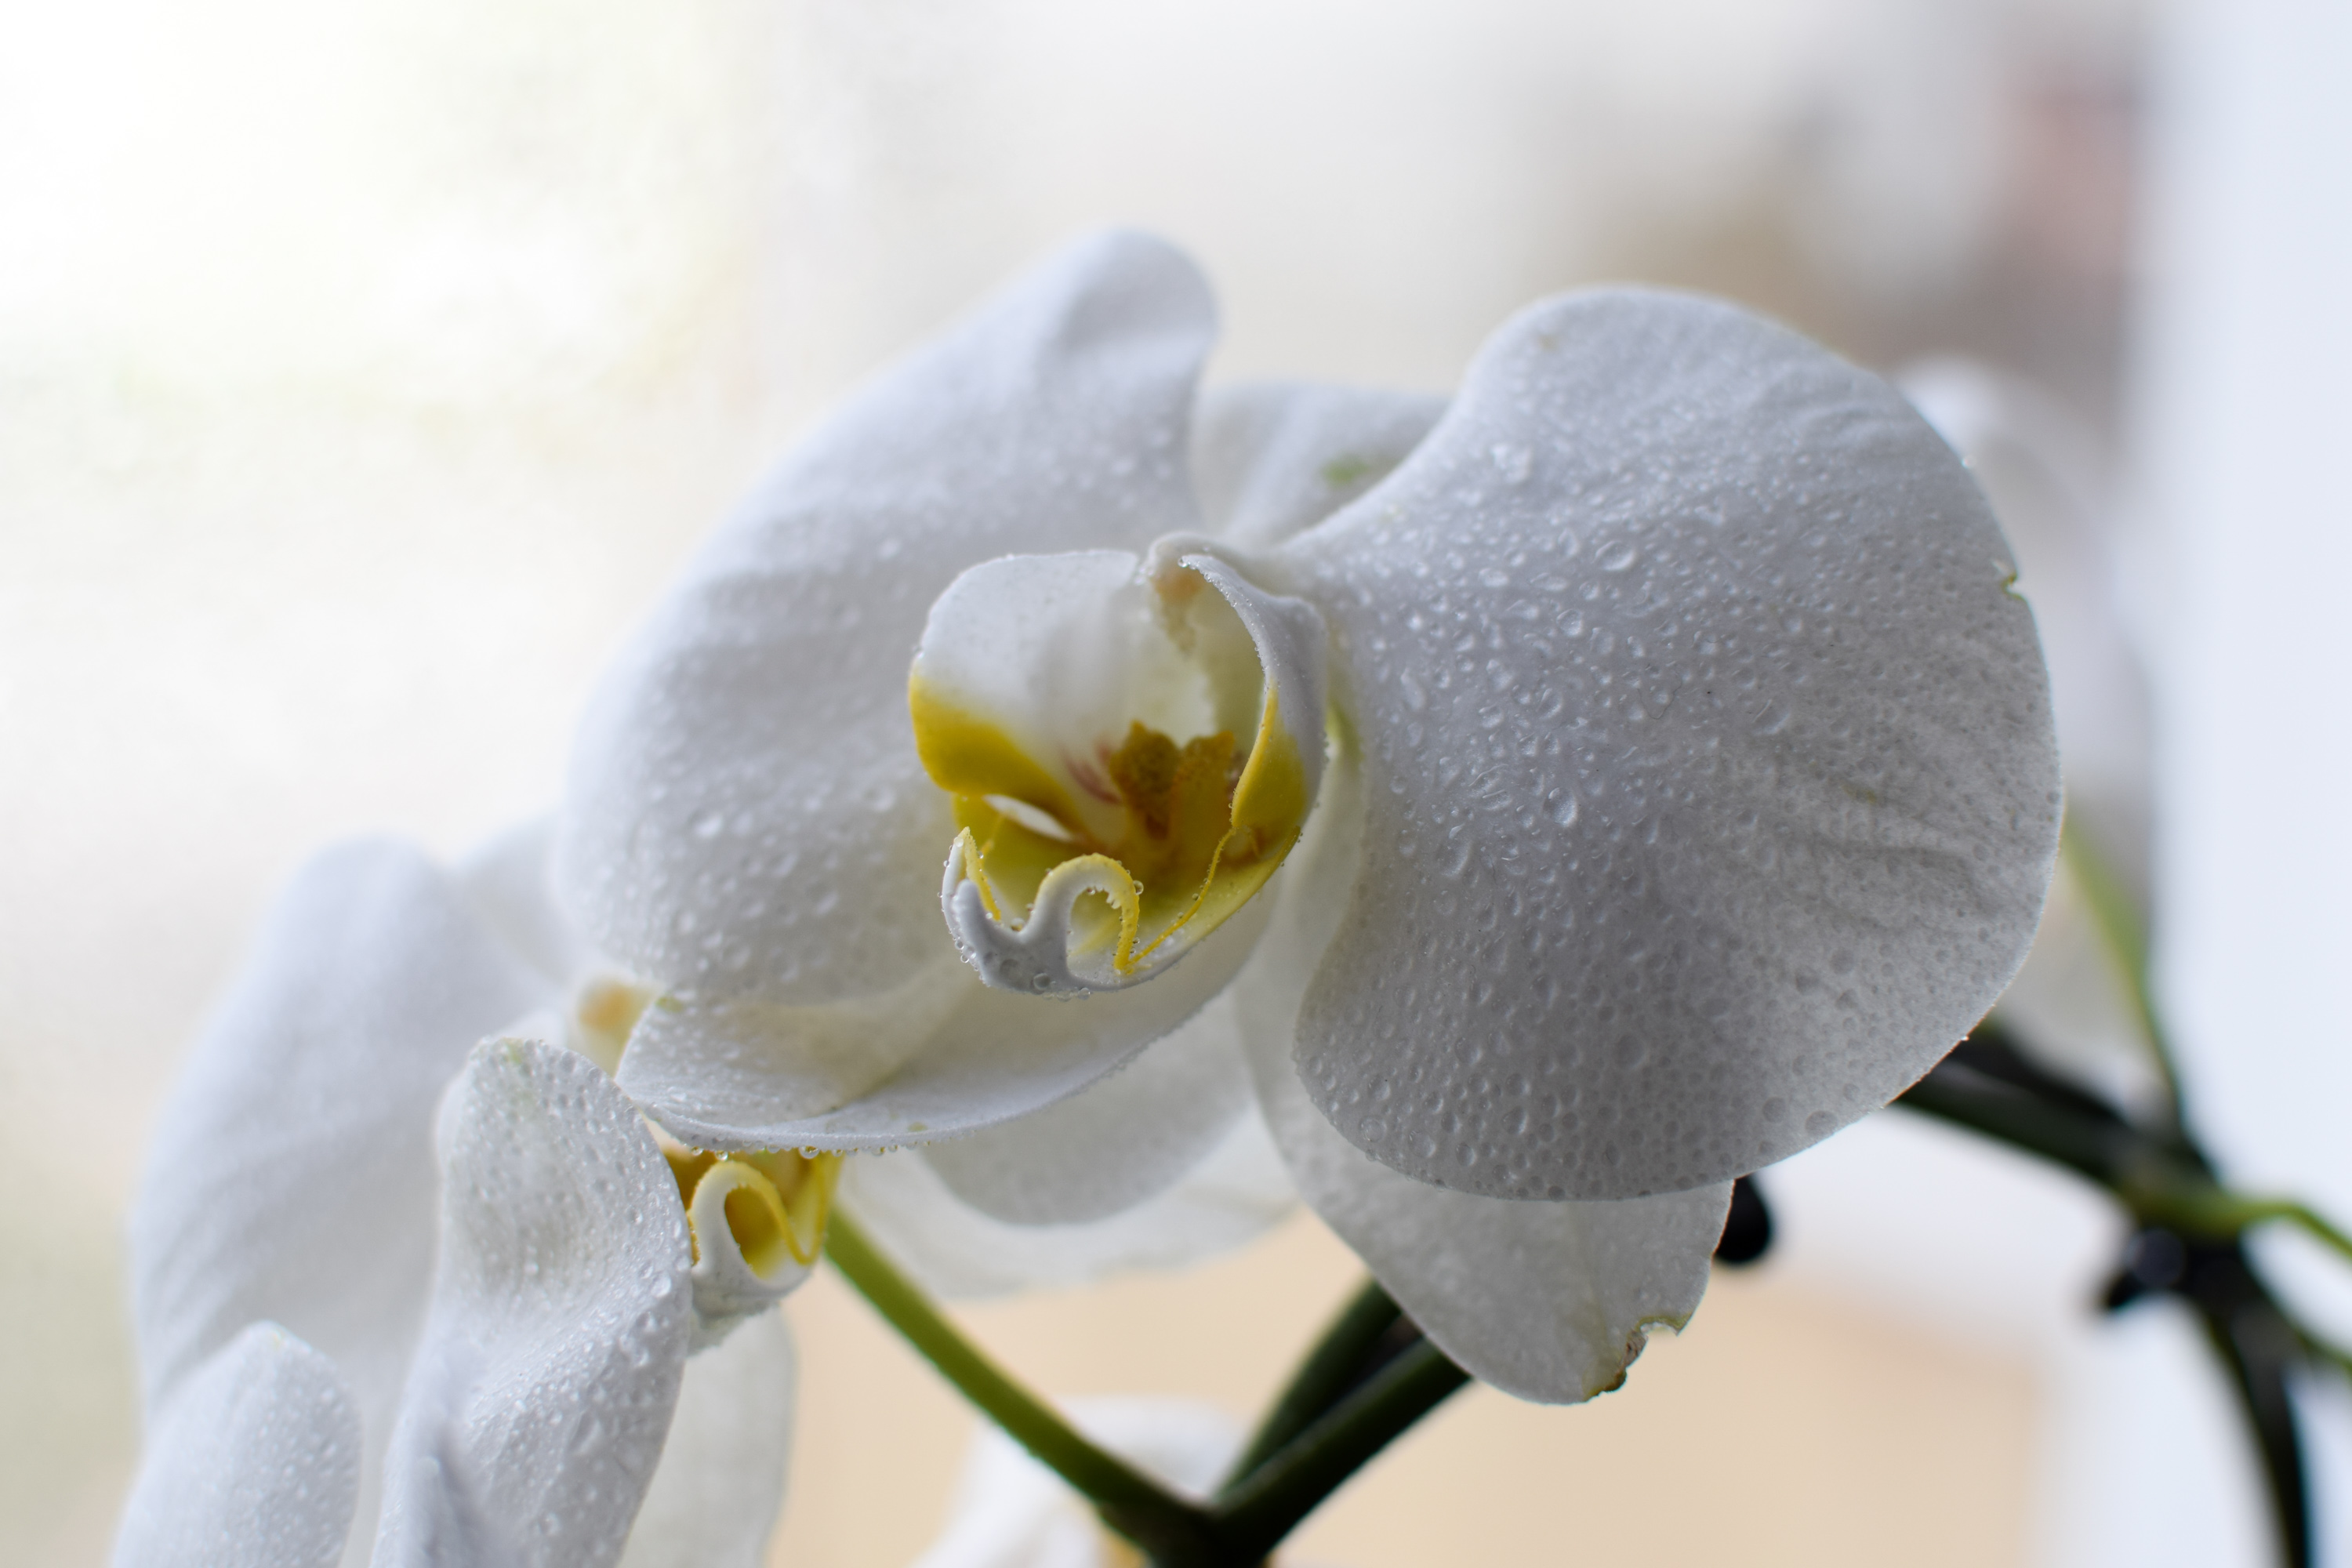 Orkidéerna blommar